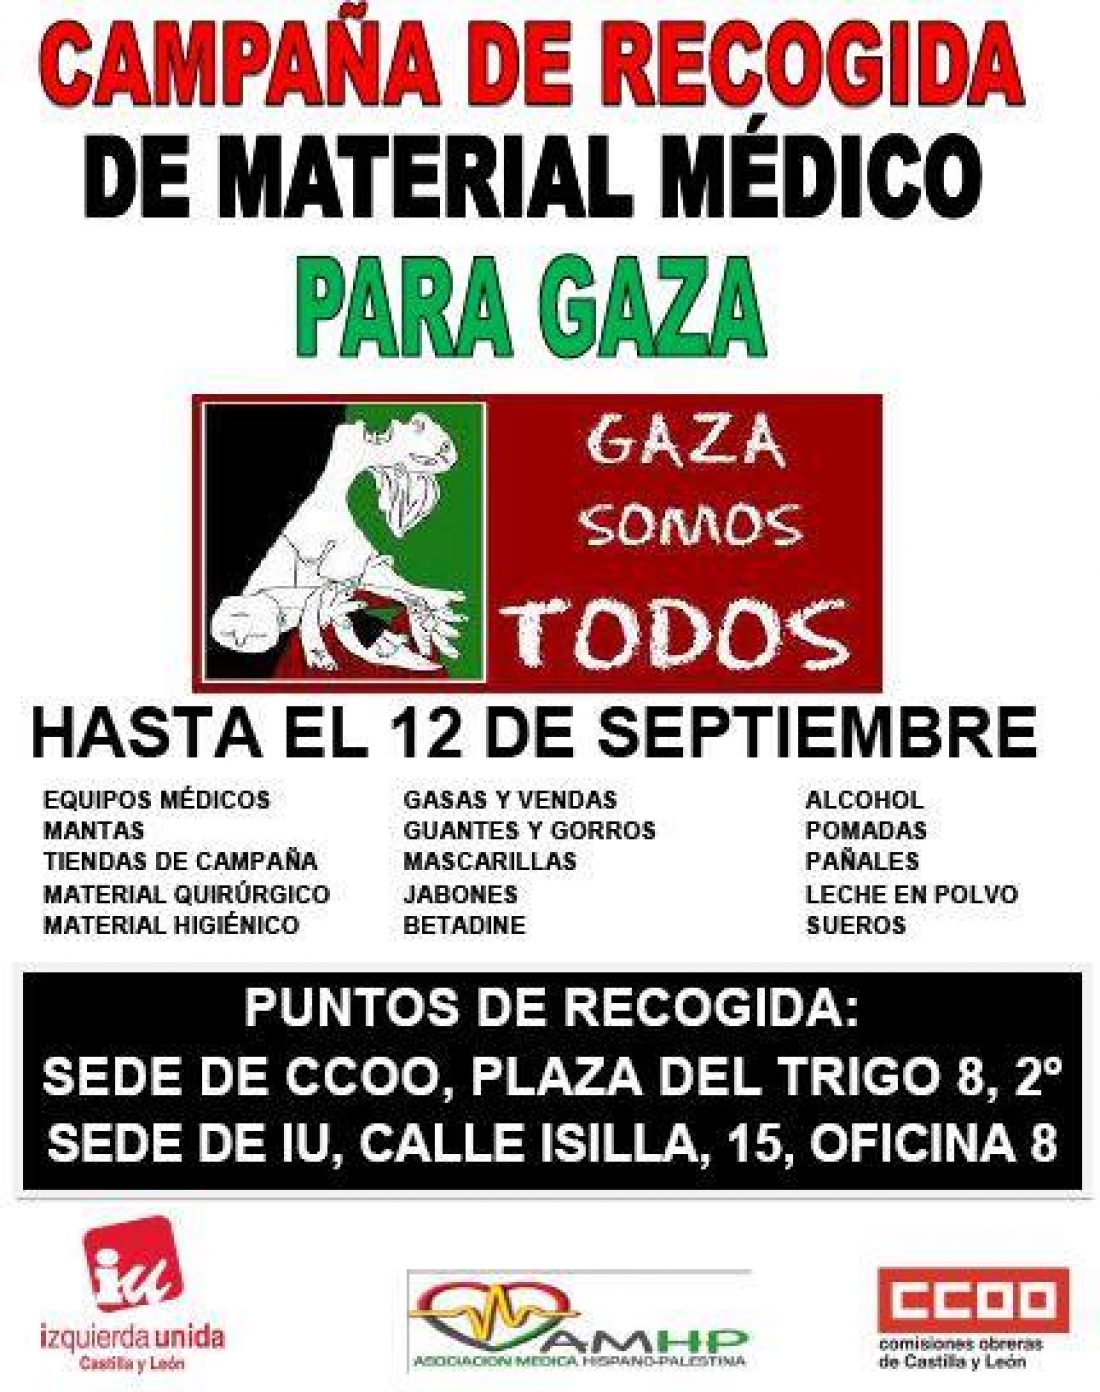 CAMPAÑA DE RECOGIDA DE MEDICINAS PARA GAZA